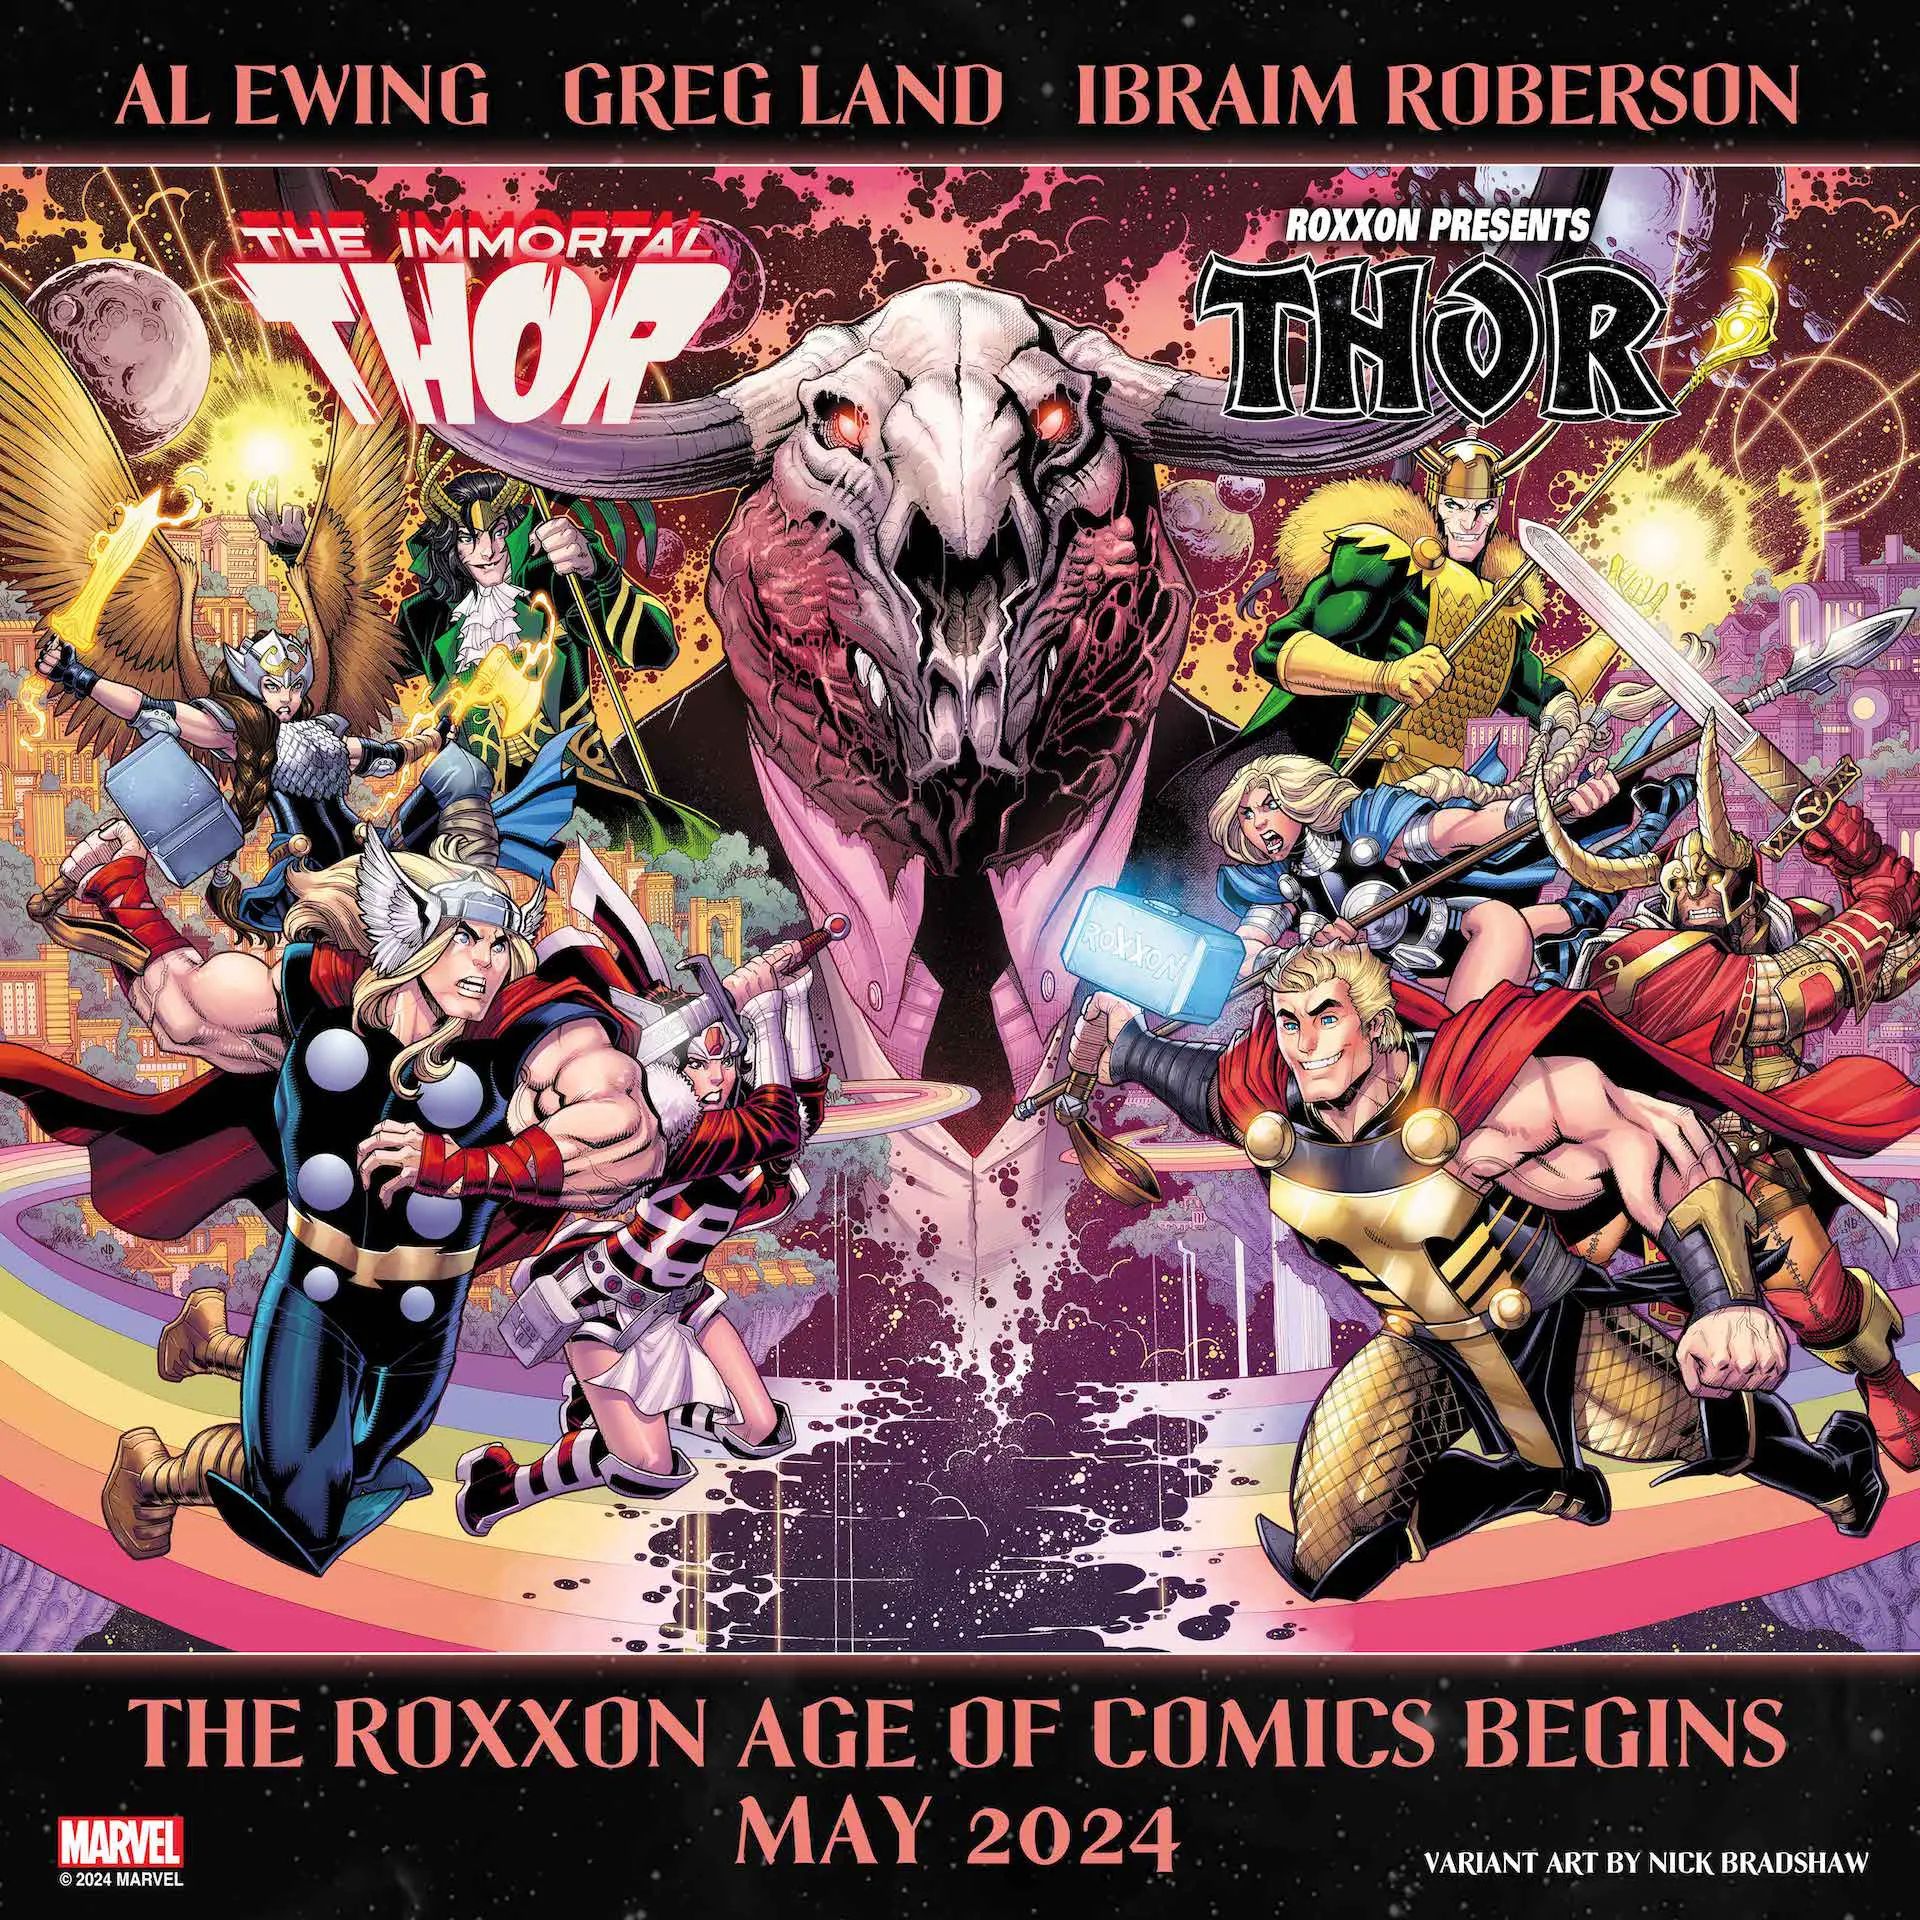 Marvel's teaser for the new Roxxon Thor series